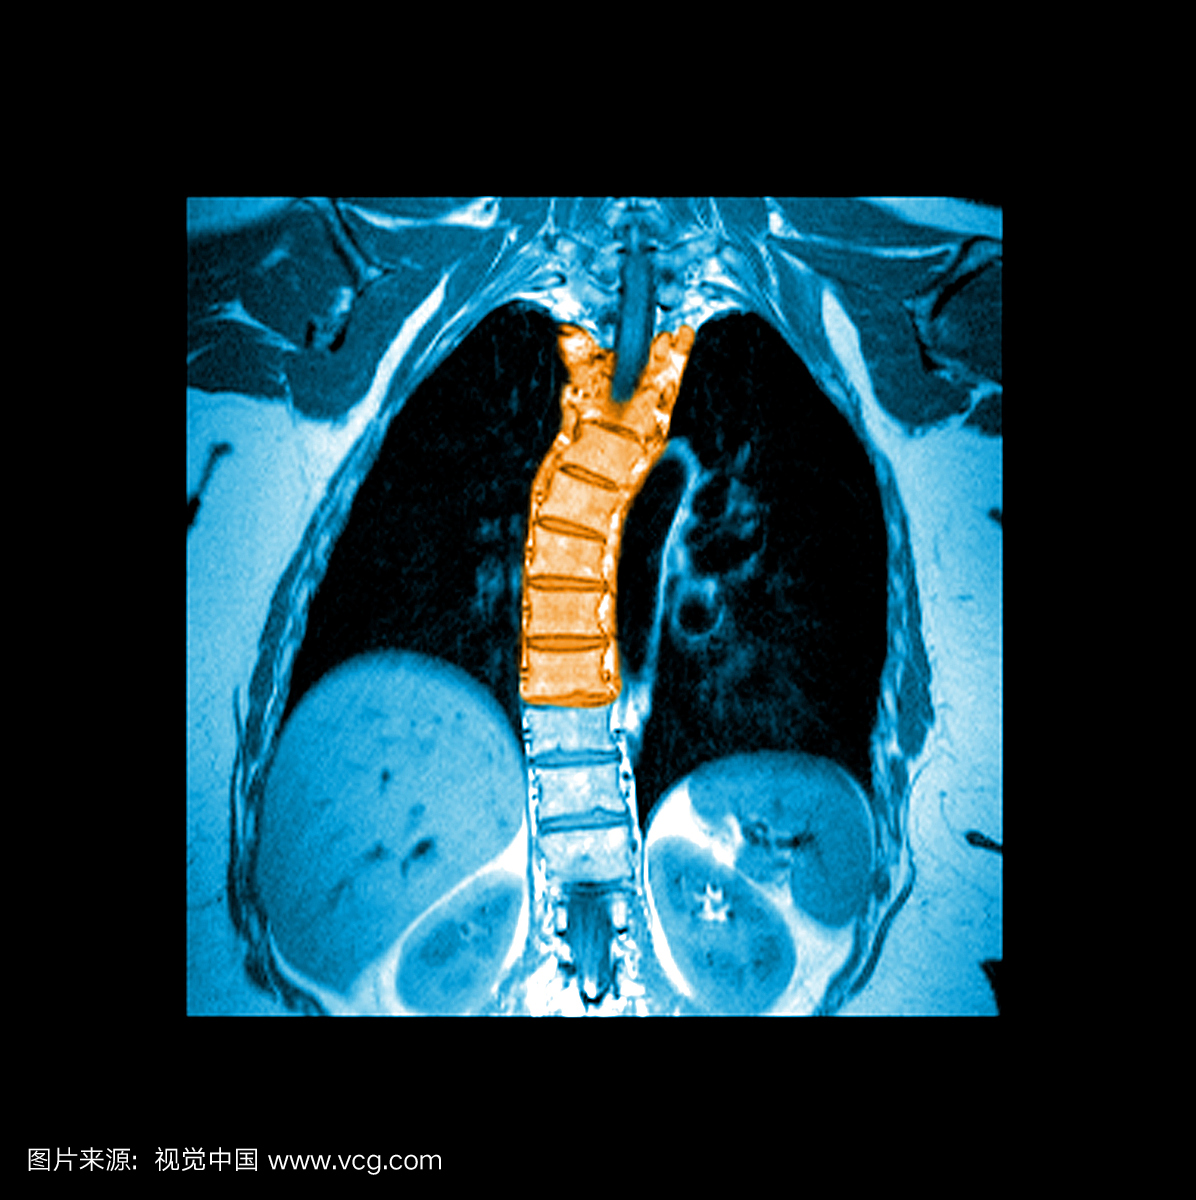 胸廓脊柱的这种增强冠状(正面)T1加权MRI图像